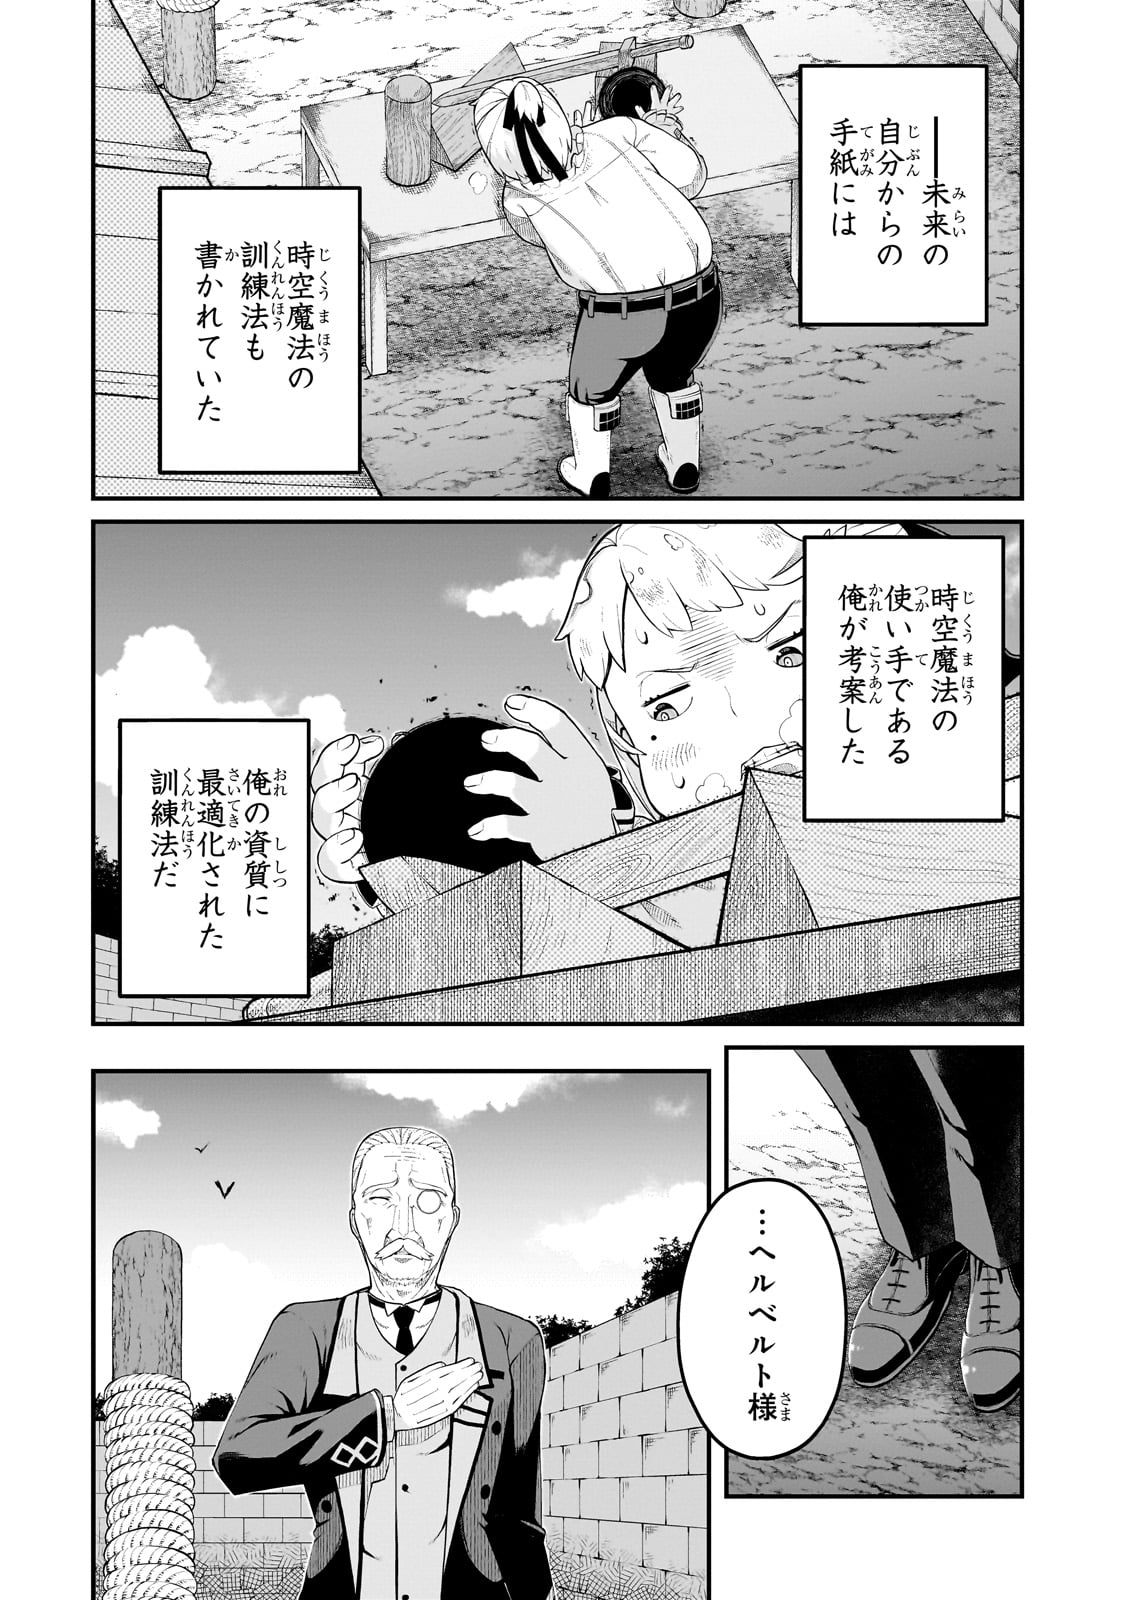 Buta Kizoku wa Mirai wo Kiri Hiraku you desu - Chapter 4 - Page 2